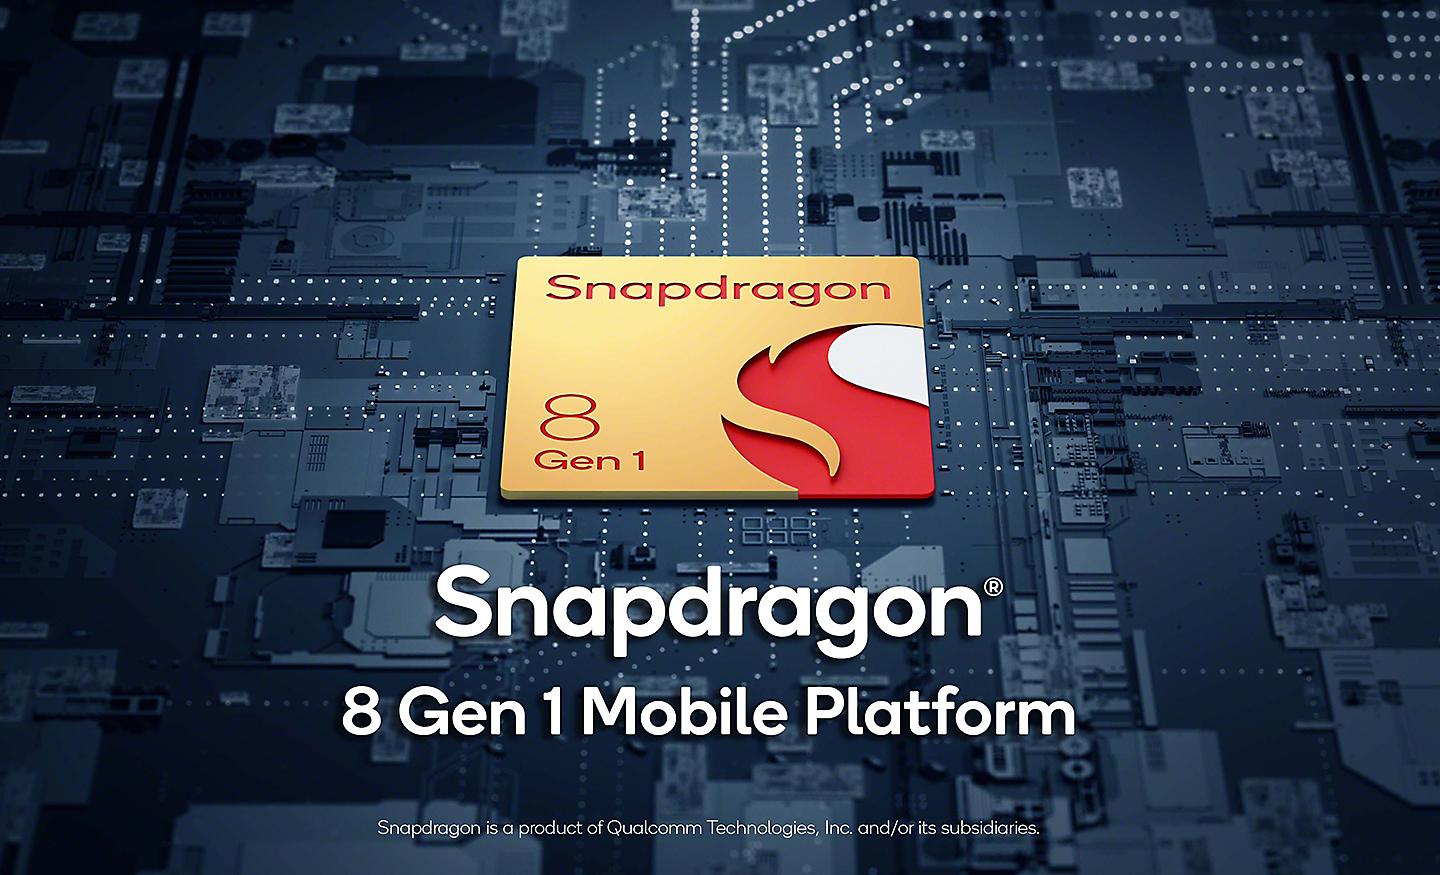 Logotip mobilne platforme Snapdragon® 8 Gen 1 na pozadini s uzorkom tiskane pločice